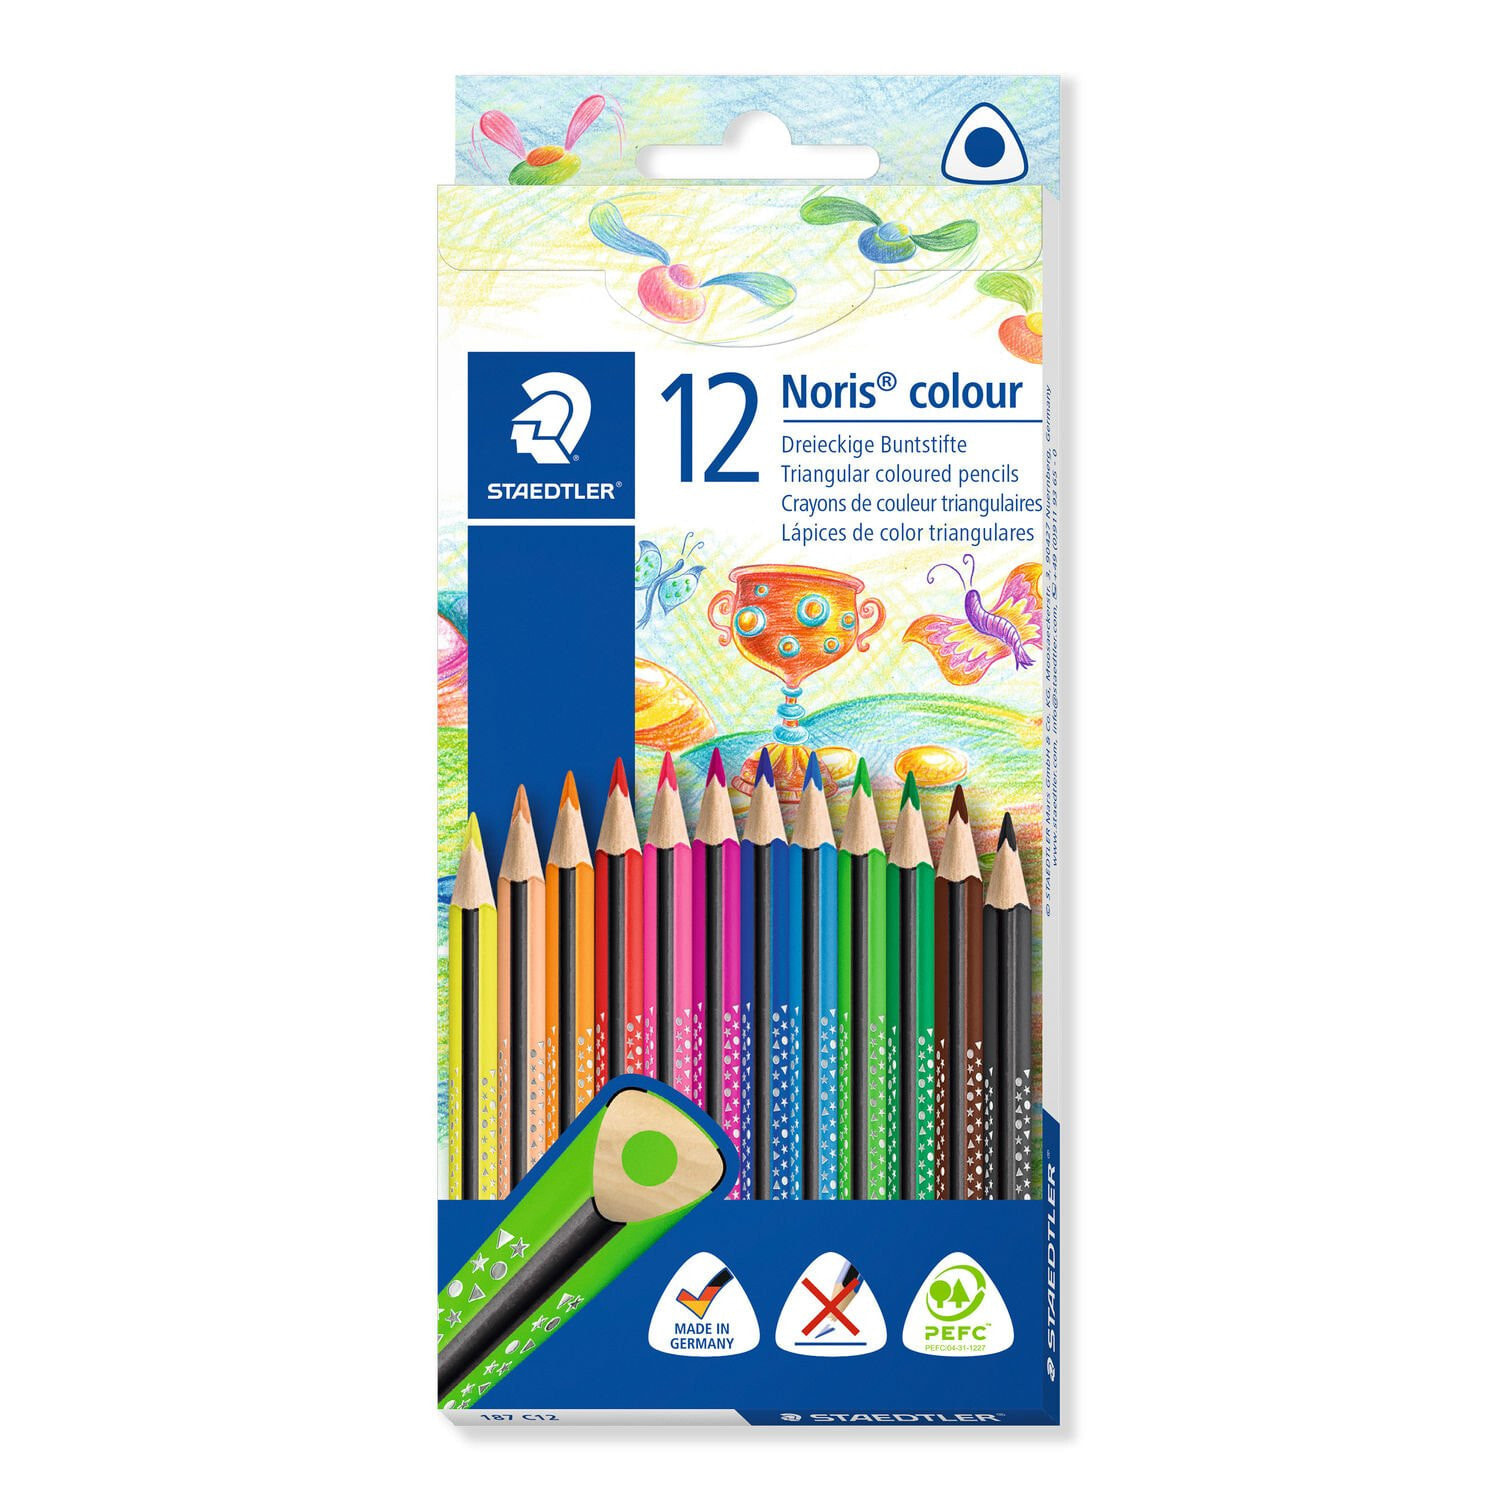 Staedtler 187 цветной карандаш Черный, Синий, Коричневый, Зеленый, Светло-синий, Светло-зеленый, Mauve, Оранжевый, Персиковый, Красный, Желтый 12 шт 187 C12